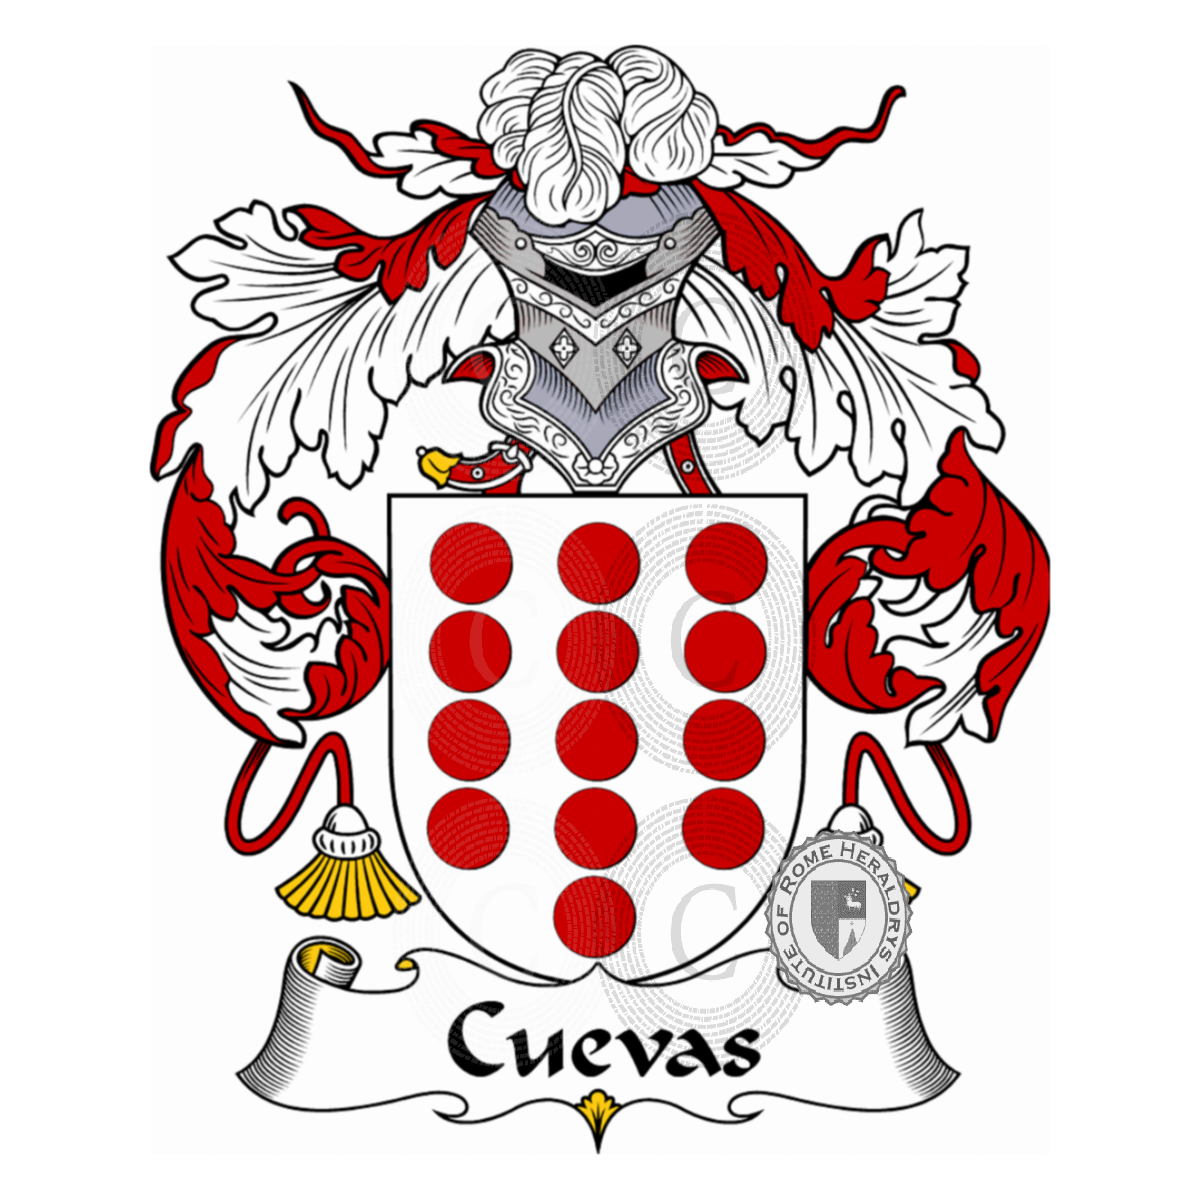 Stemma della famigliaCuevas, Cuevaz,de Cuevas